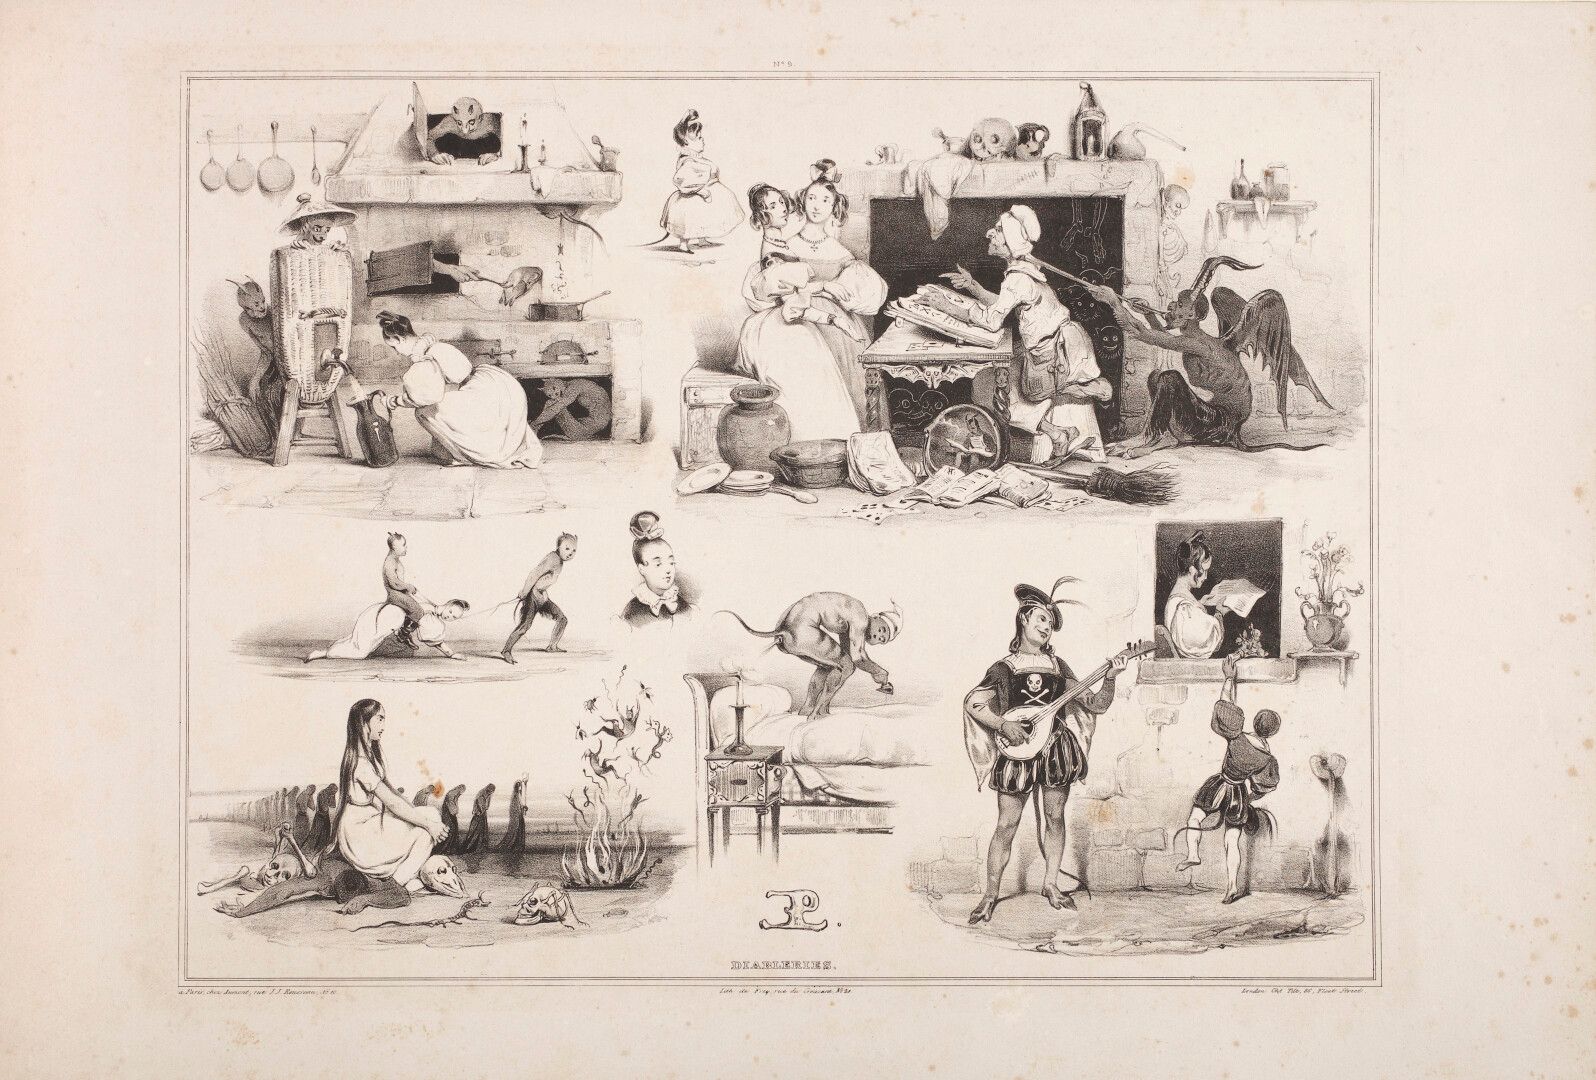 Null Le POITEVIN (Eugène)或Le Poittevin (1806-1870), 后面是

石版印刷术中的Diableries或Devil&hellip;